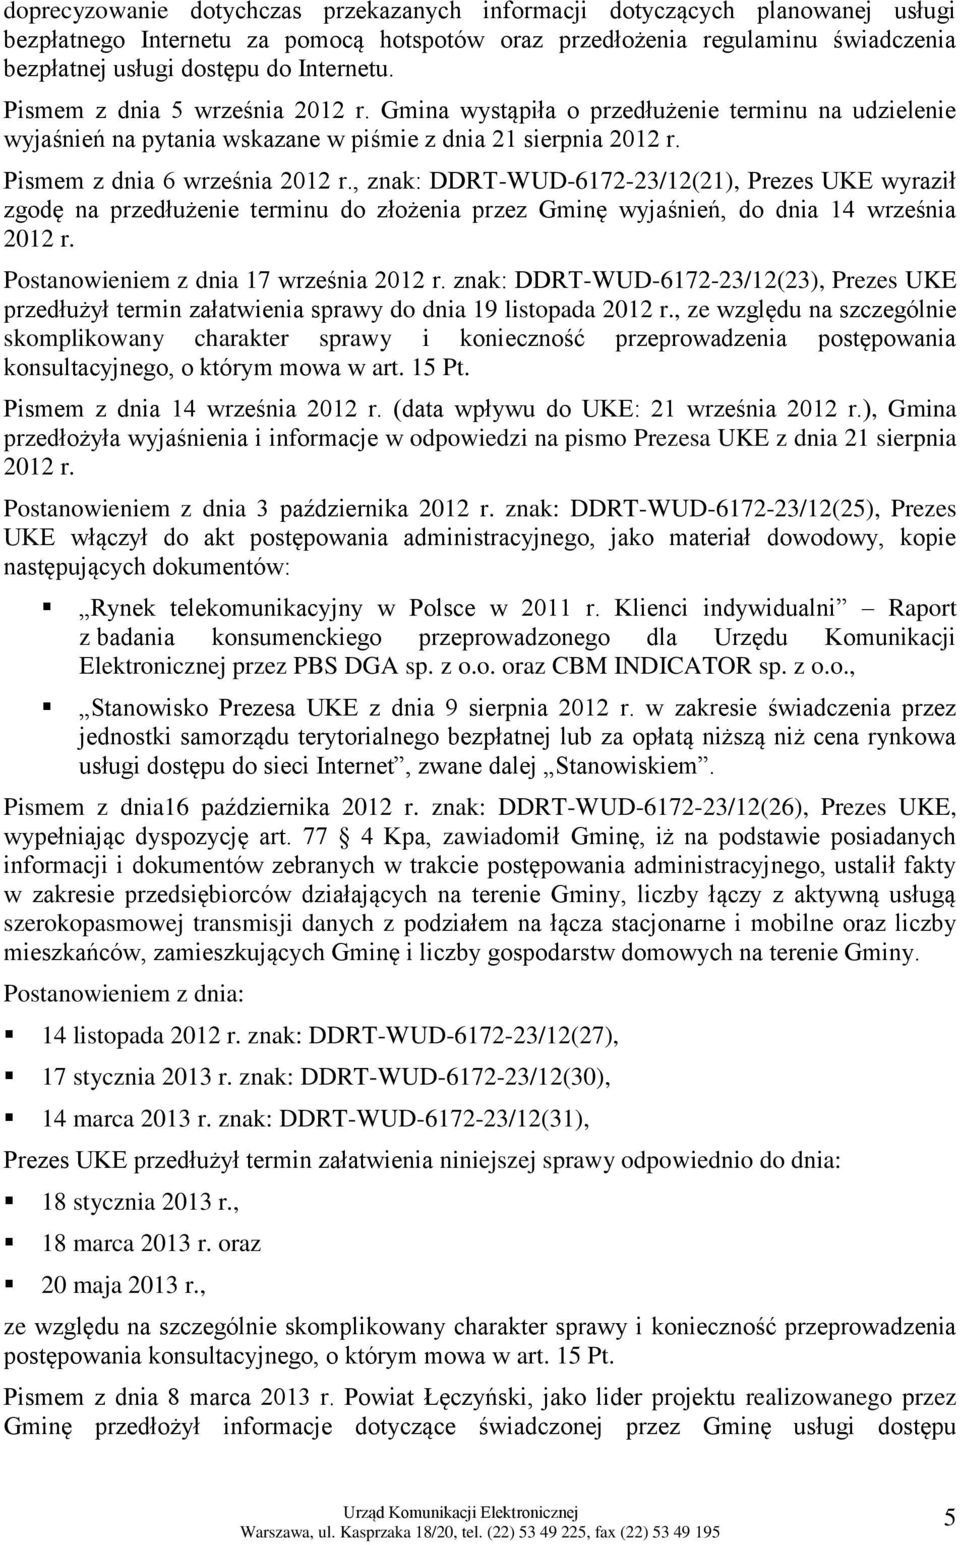 , znak: DDRT-WUD-6172-23/12(21), Prezes UKE wyraził zgodę na przedłużenie terminu do złożenia przez Gminę wyjaśnień, do dnia 14 września 2012 r. Postanowieniem z dnia 17 września 2012 r.